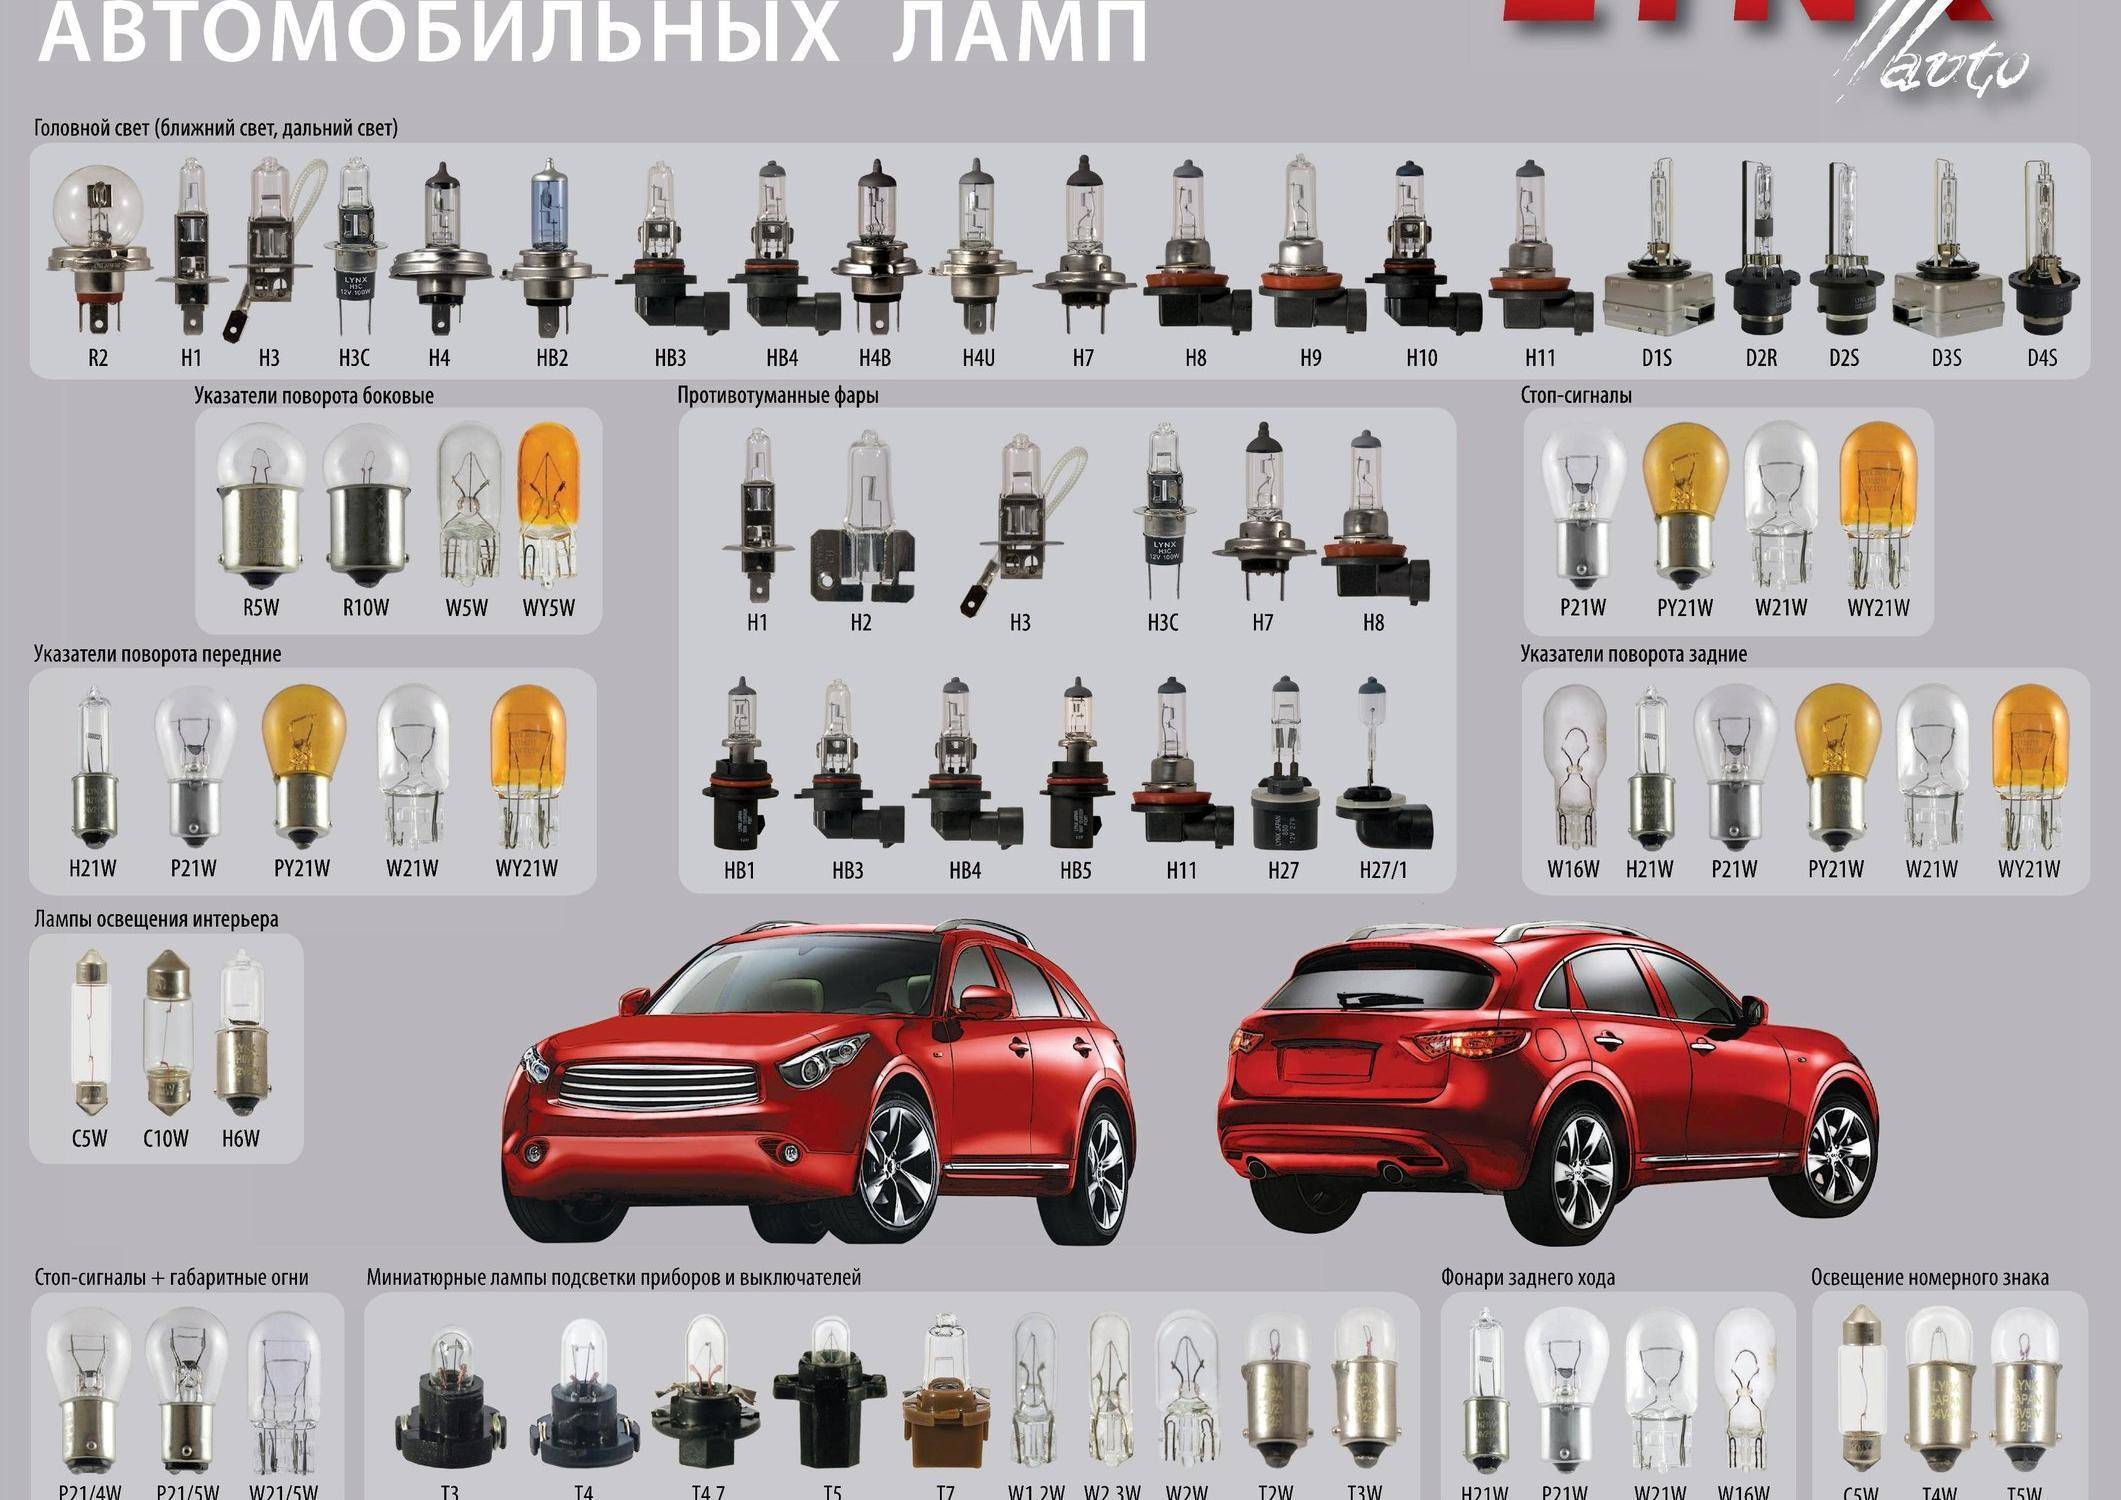 Цоколи и типы автомобильных ламп: как отличить по маркировке?